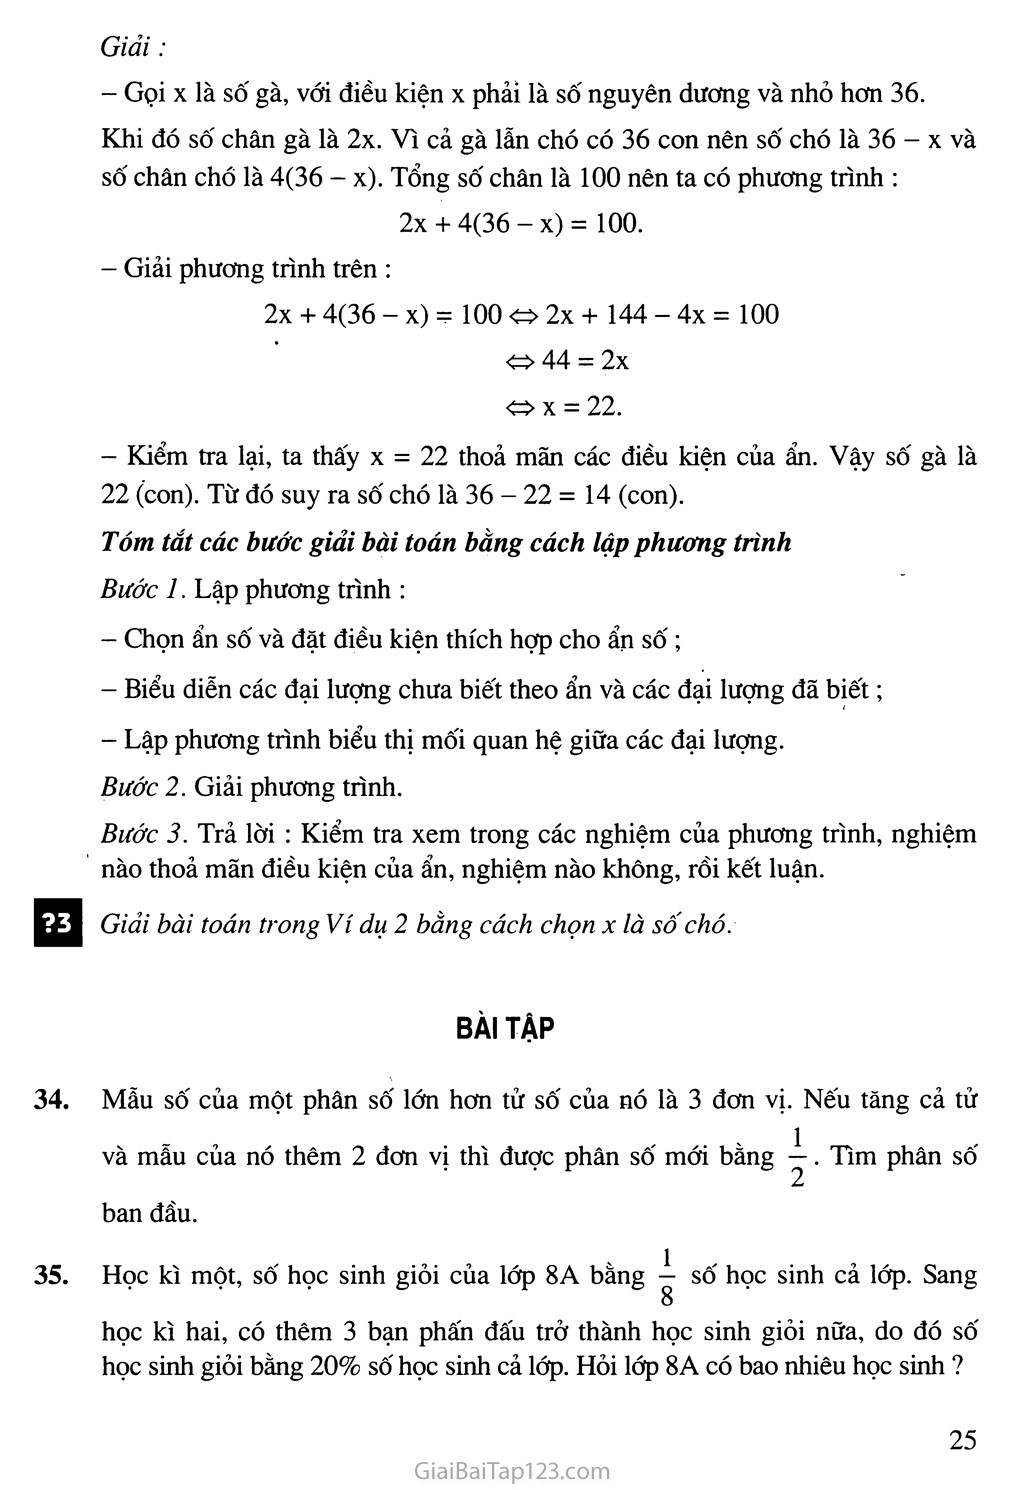 Bài 6. Giải bài toán bằng cách lập phương trình trang 2